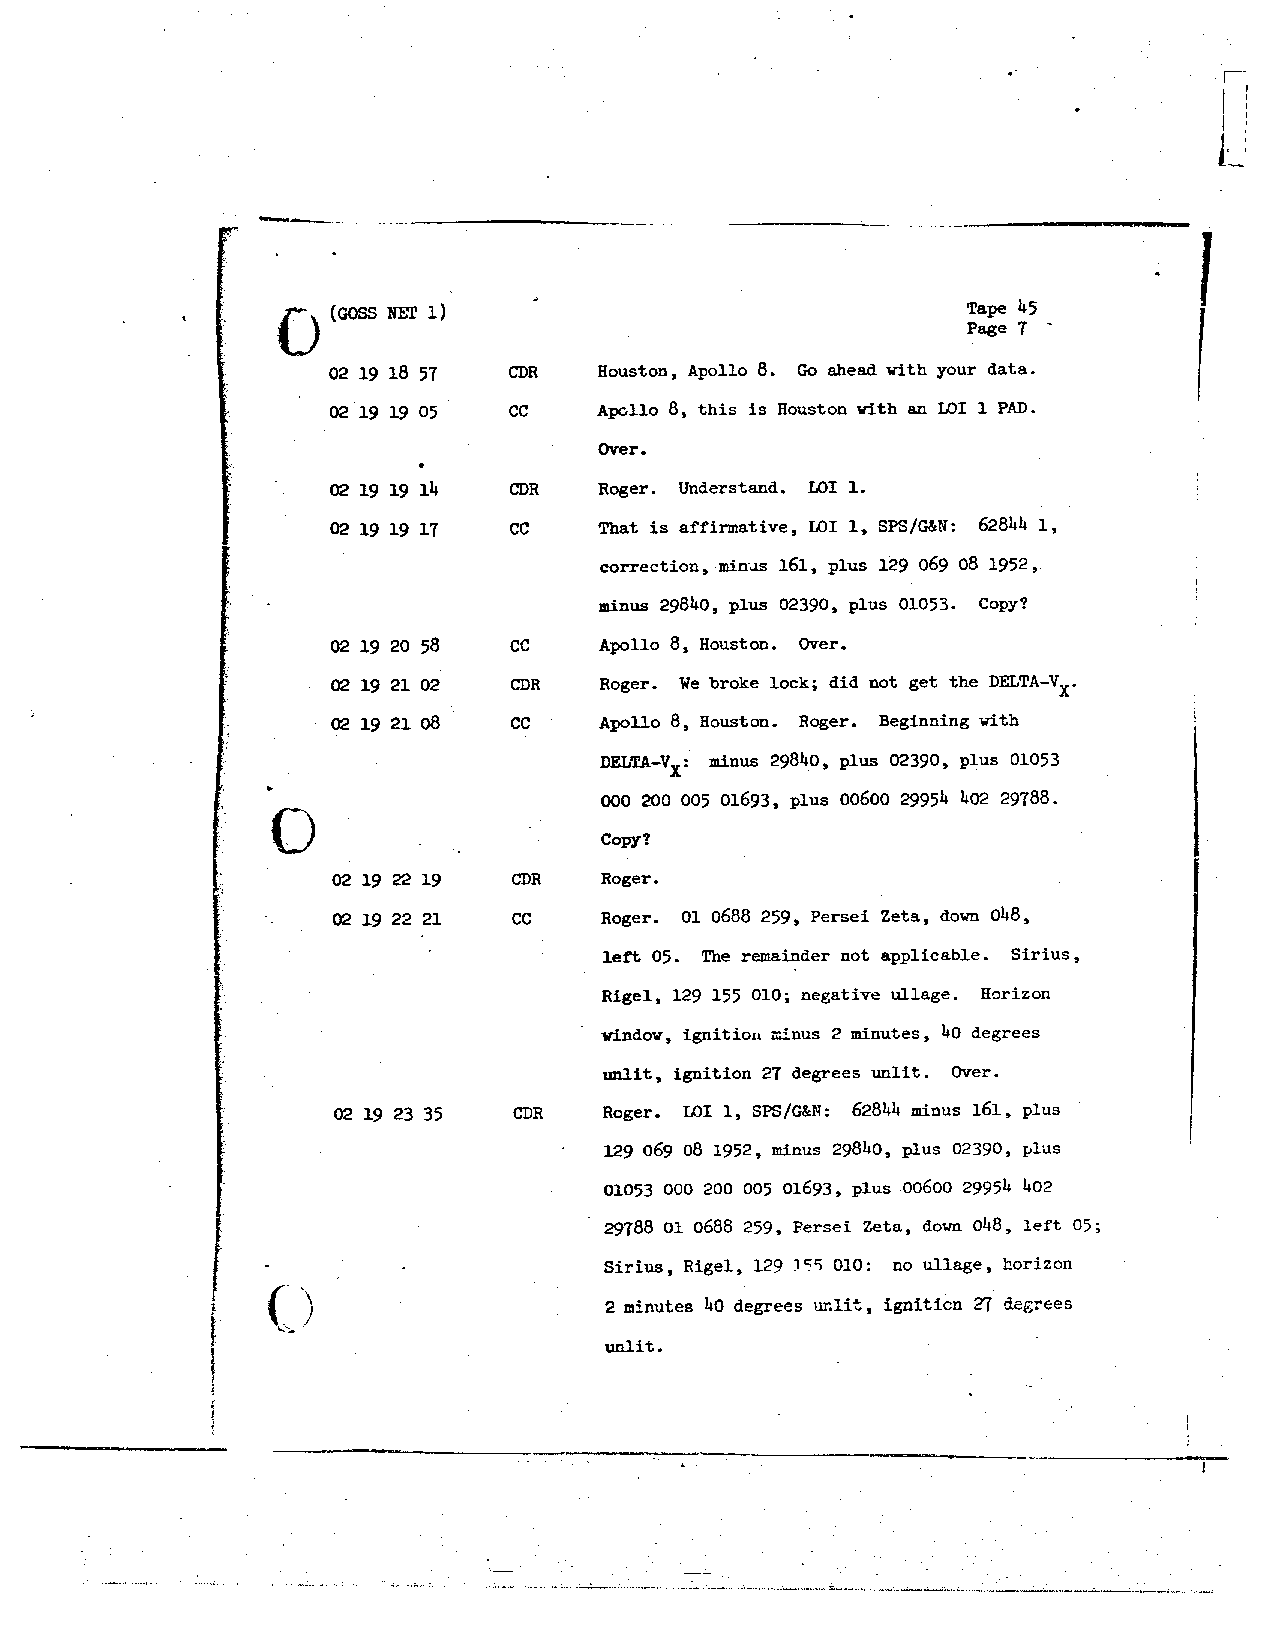 Page 346 of Apollo 8’s original transcript